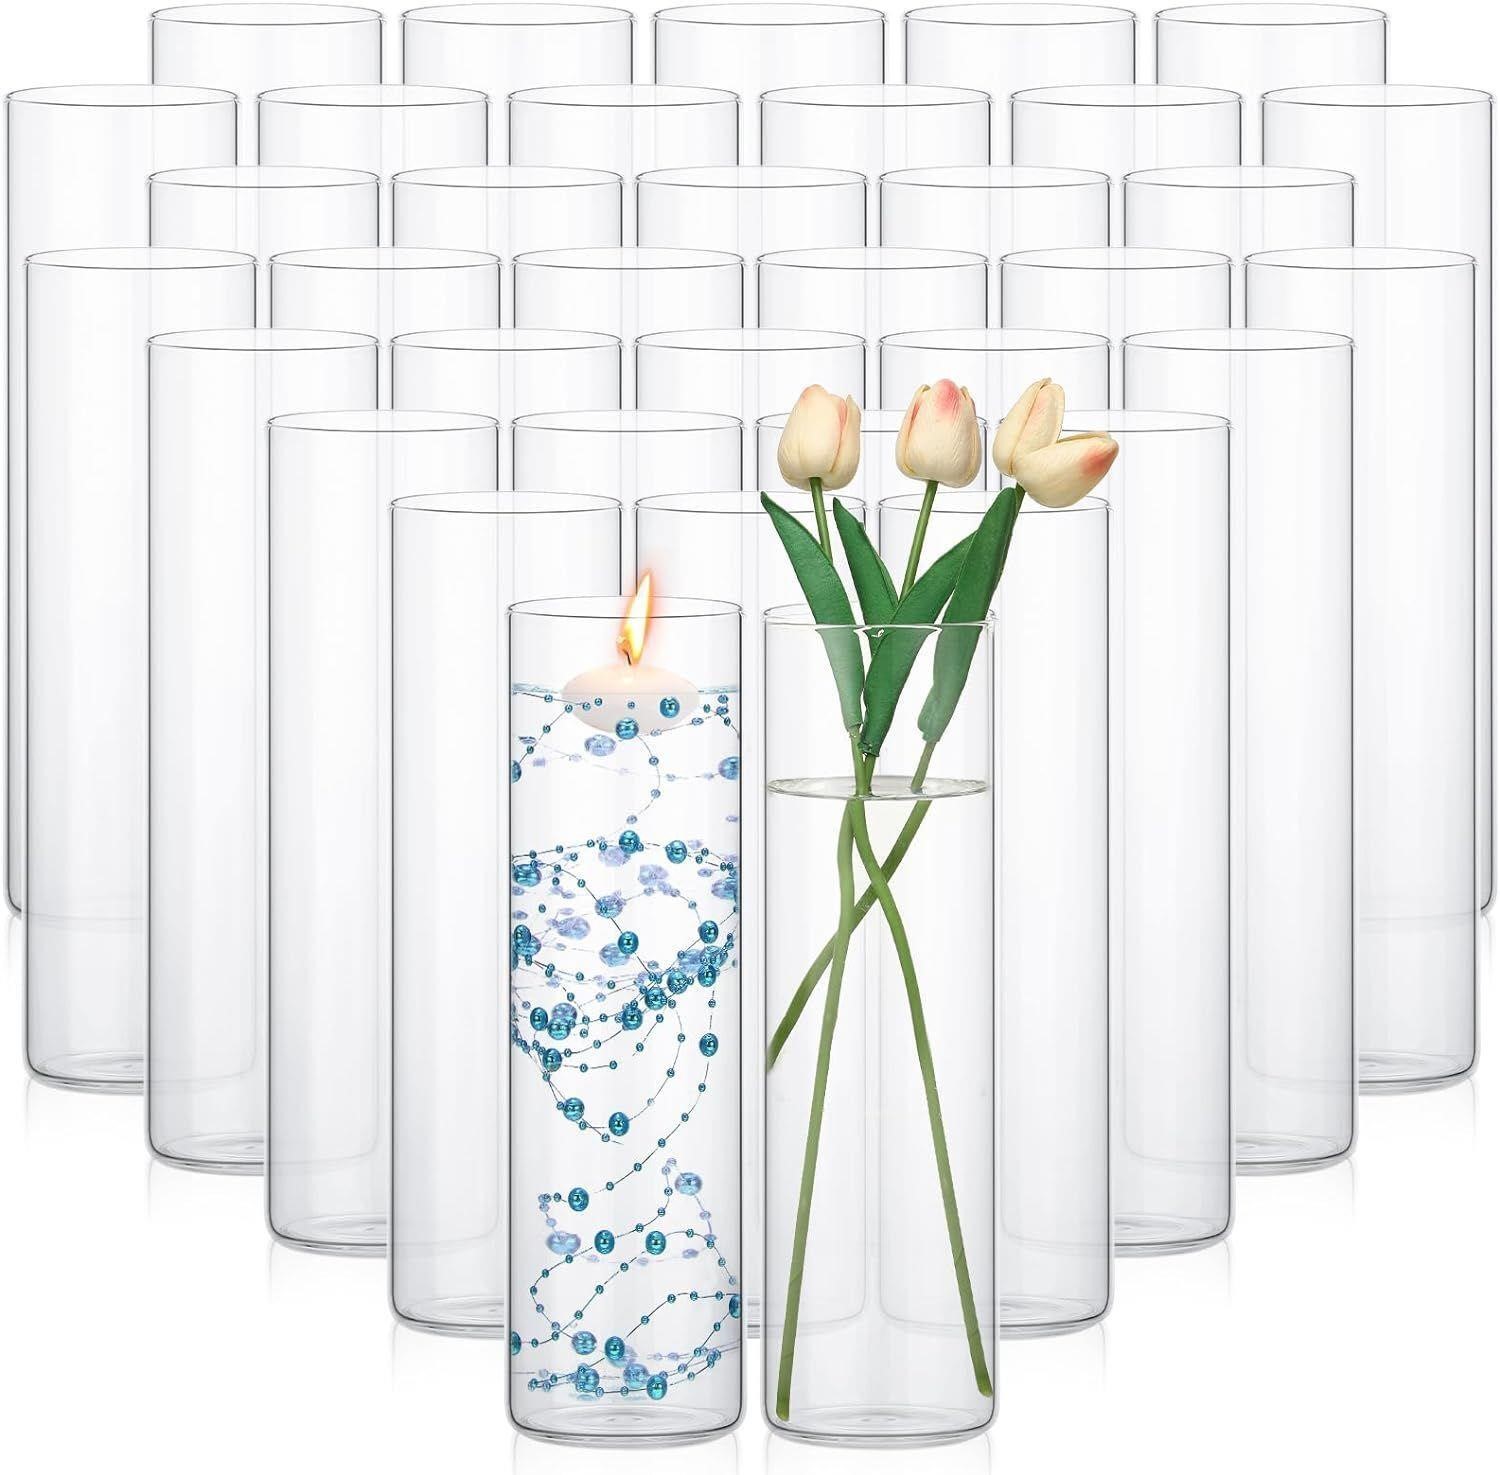 36 Pcs Glass Cylinder Vases